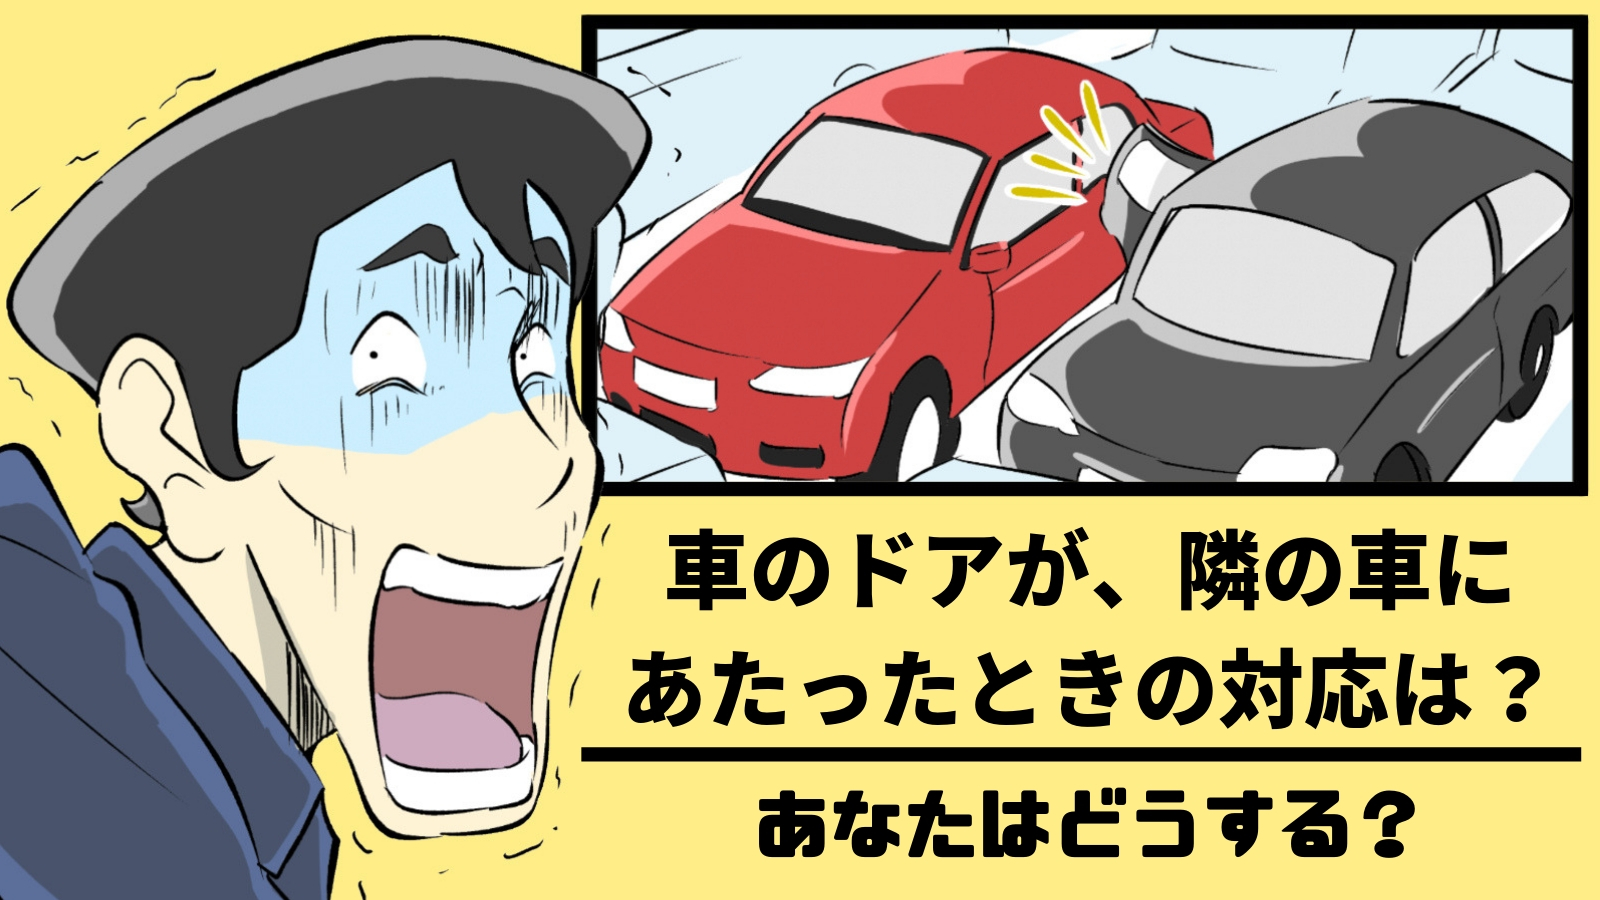 車のドアが 隣の車に当たったときの対応 あなたはどうする かいちの漫画ブログ